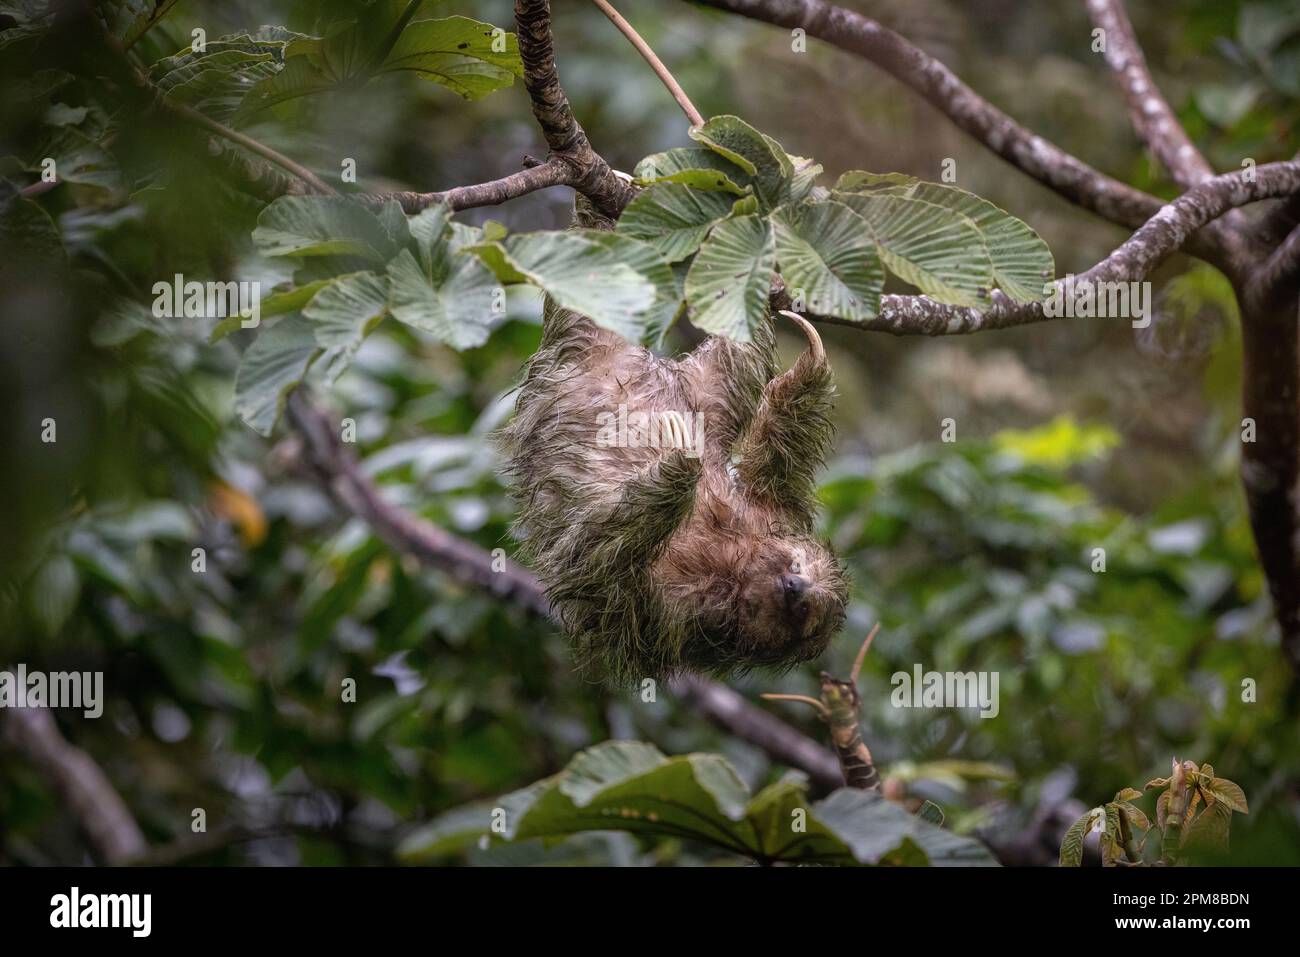 Costa Rica, Provinz Alajuela, paresseux à Schlucht Brune (Bradypus variegatus), 3 doigts Stockfoto